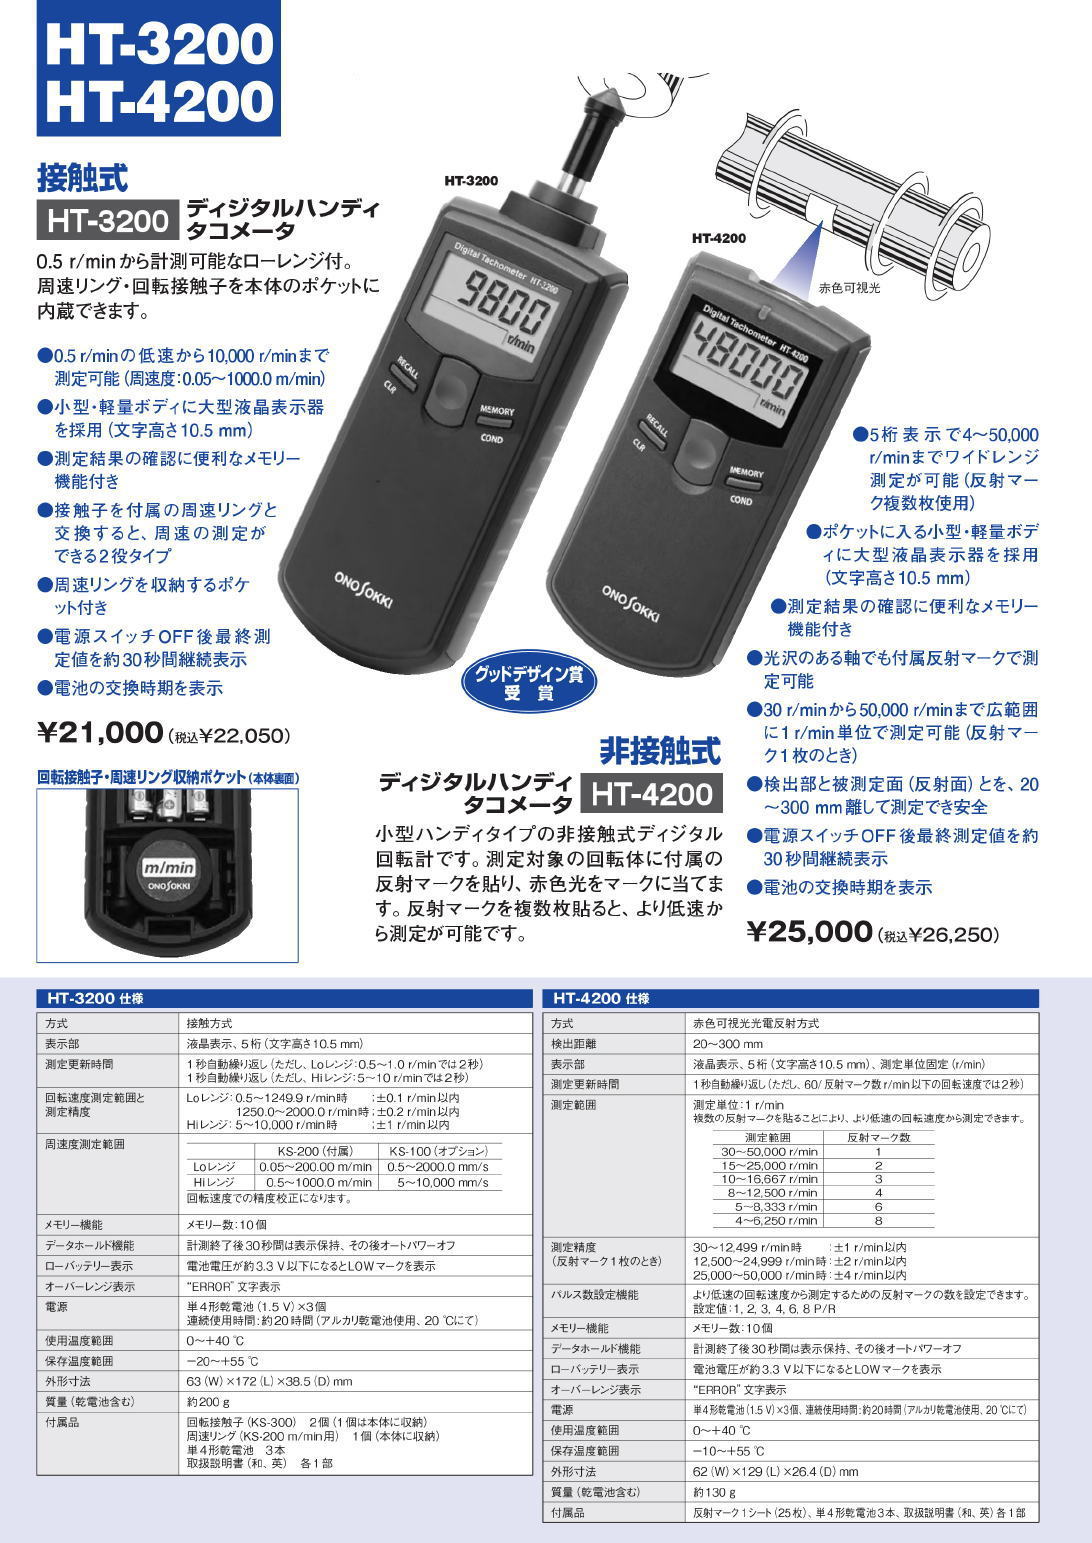 販売注文 デジタルハンディタコメータ 小野測器 HT-5500 - その他